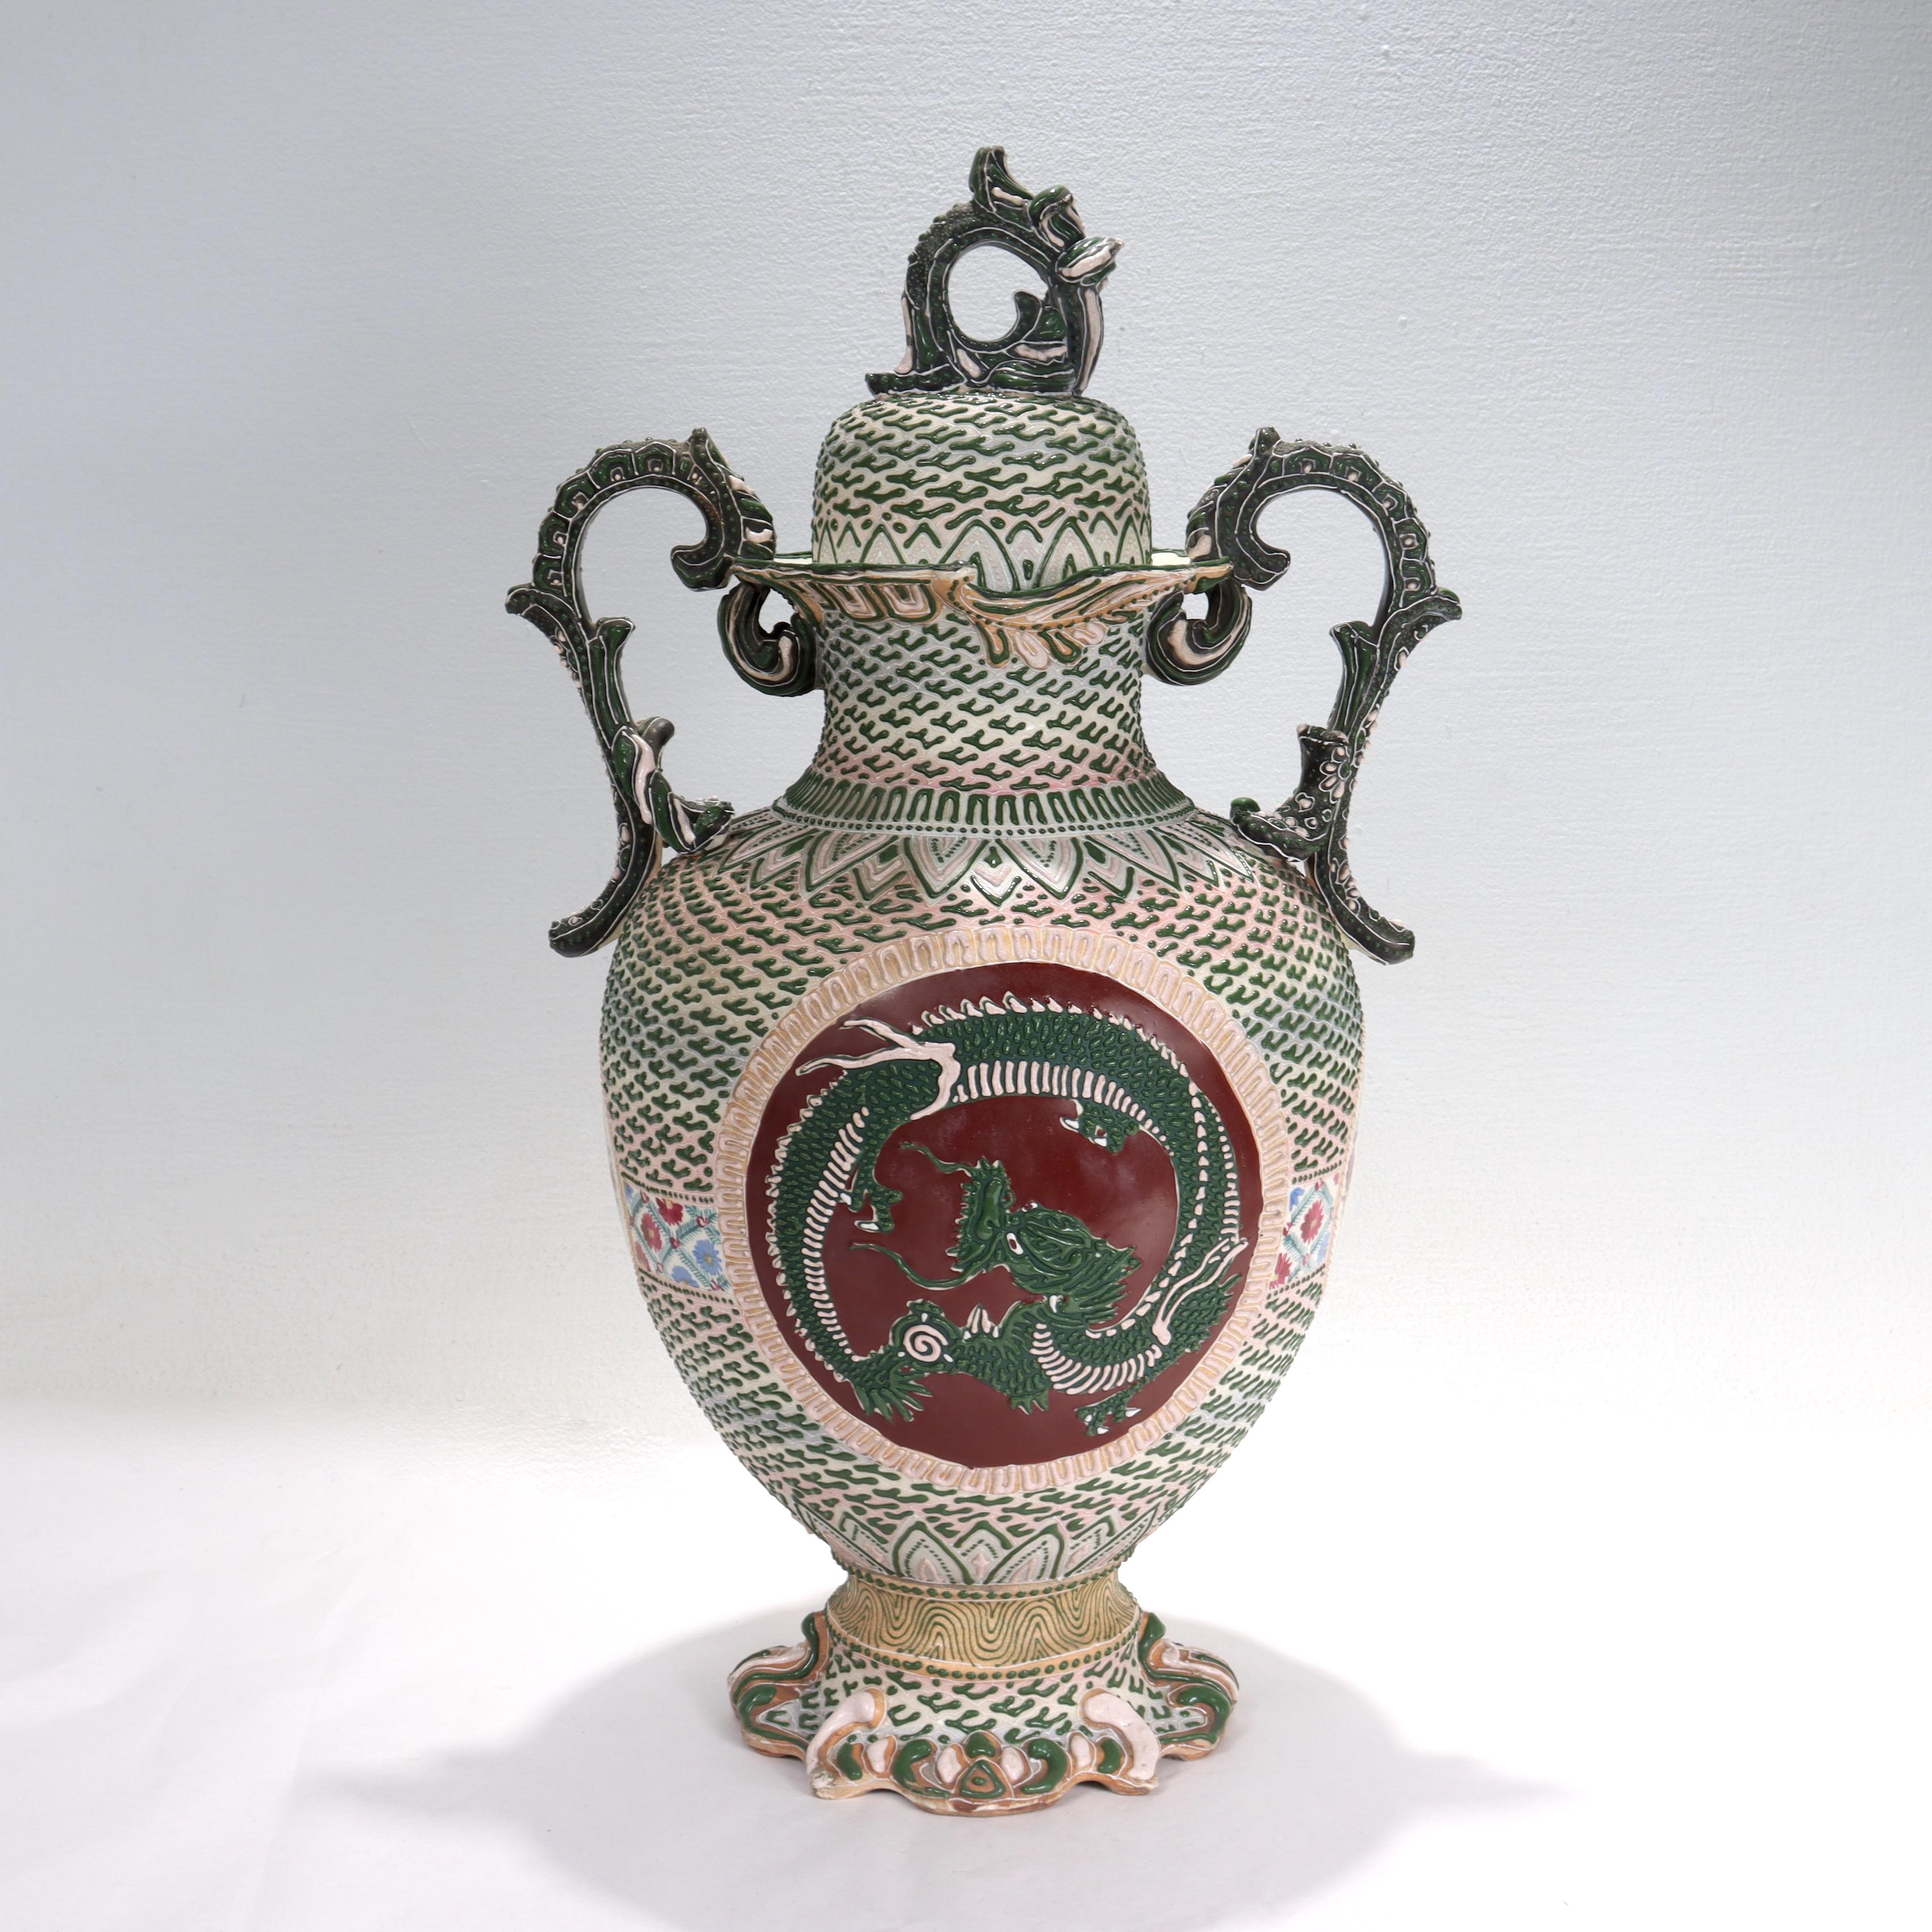 Vase ou urne couverte en porcelaine japonaise Nippon.

Avec des tons verts, roses et blancs en émail moriage en relief qui donne un effet tridimensionnel. 

Décorée de 4 cartouches tout au long de l'ouvrage. Le cartouche principal représente un